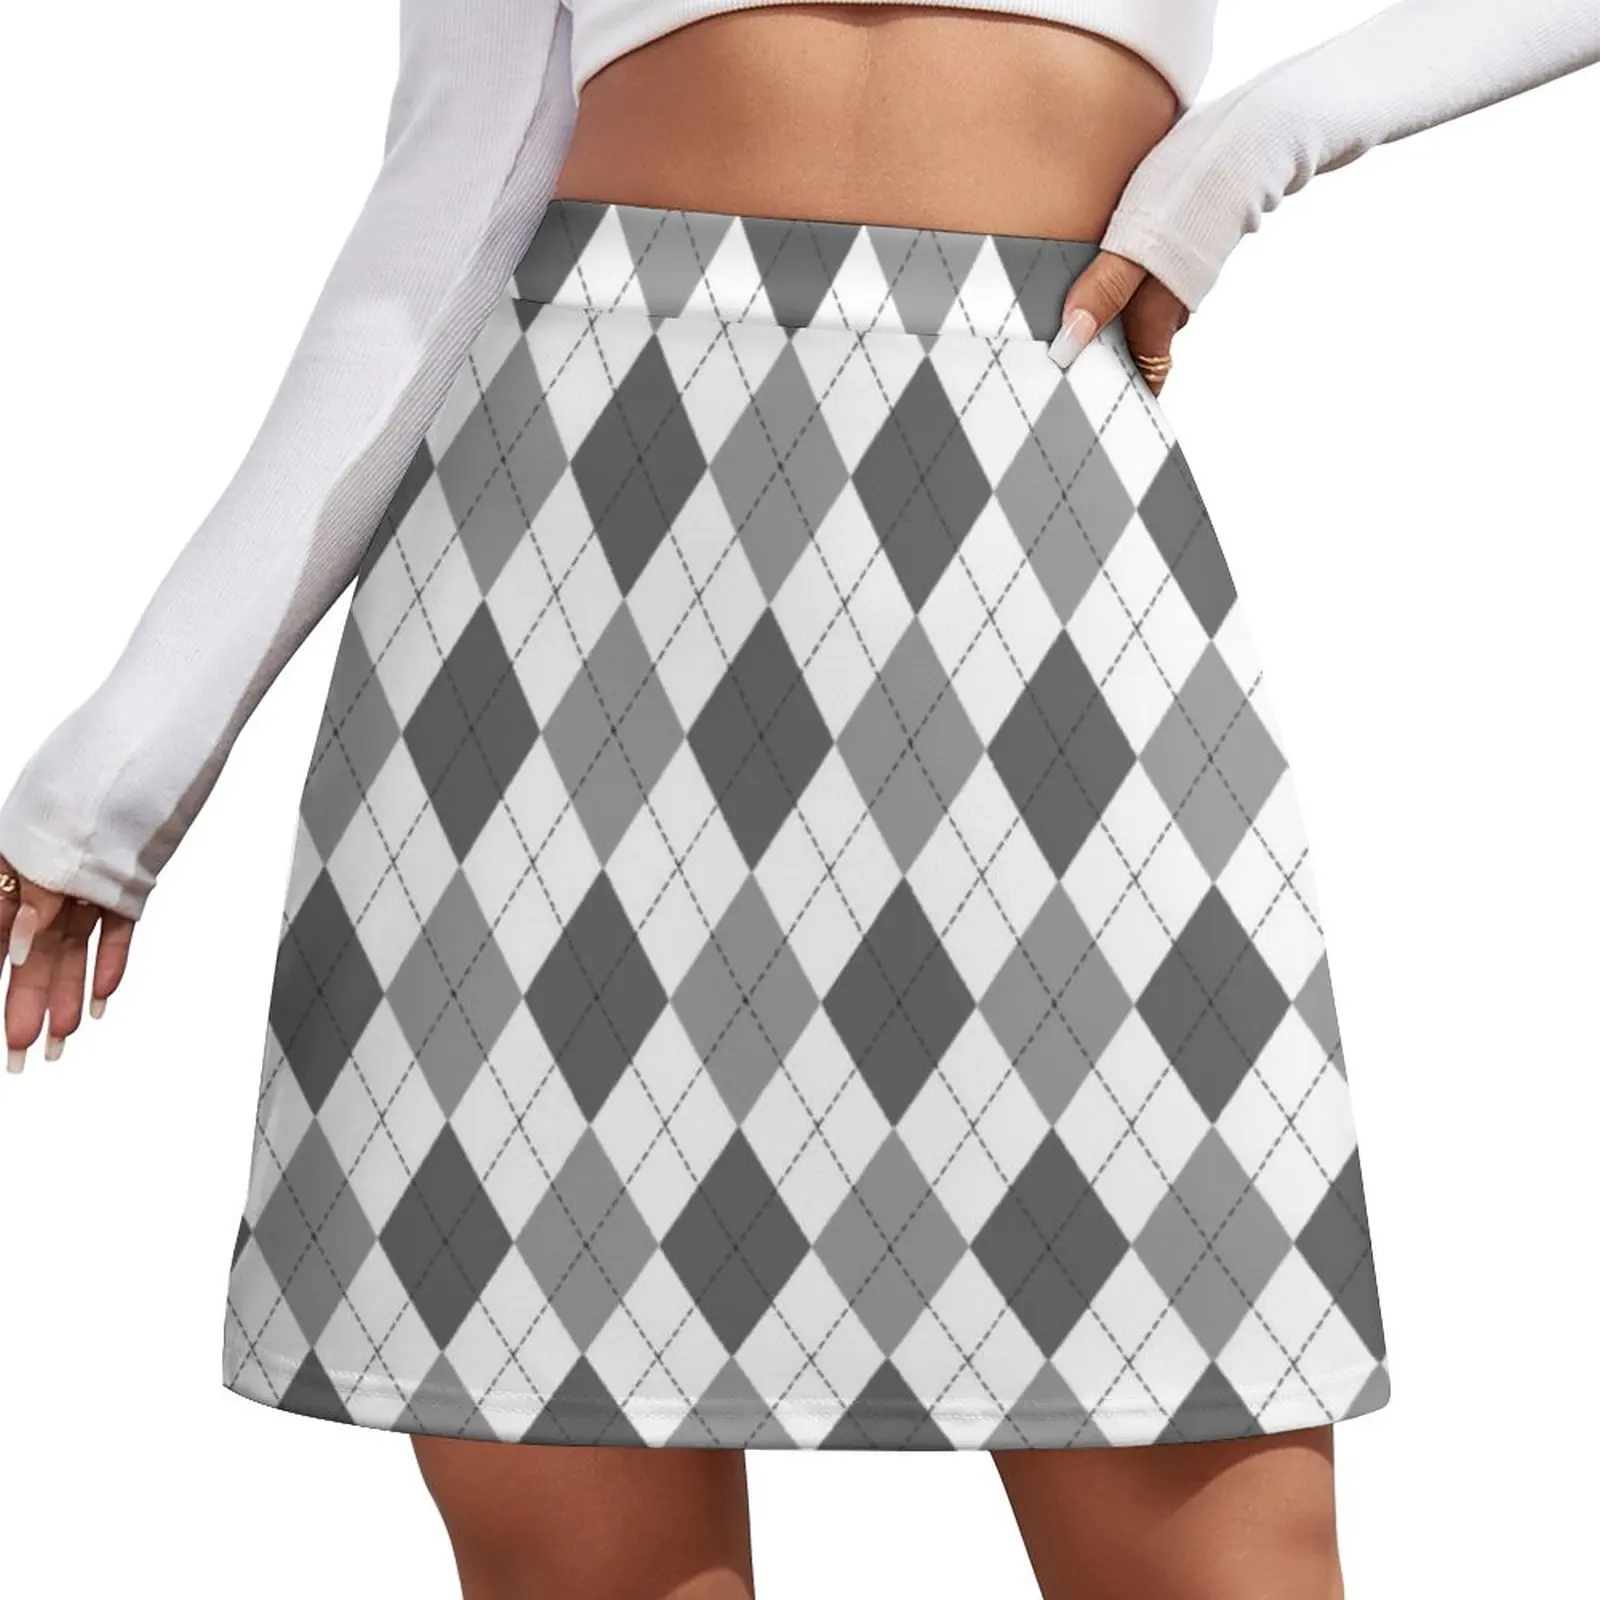 Grey: Argyle Pattern Mini Skirt skirt for women Woman short skirt shorts